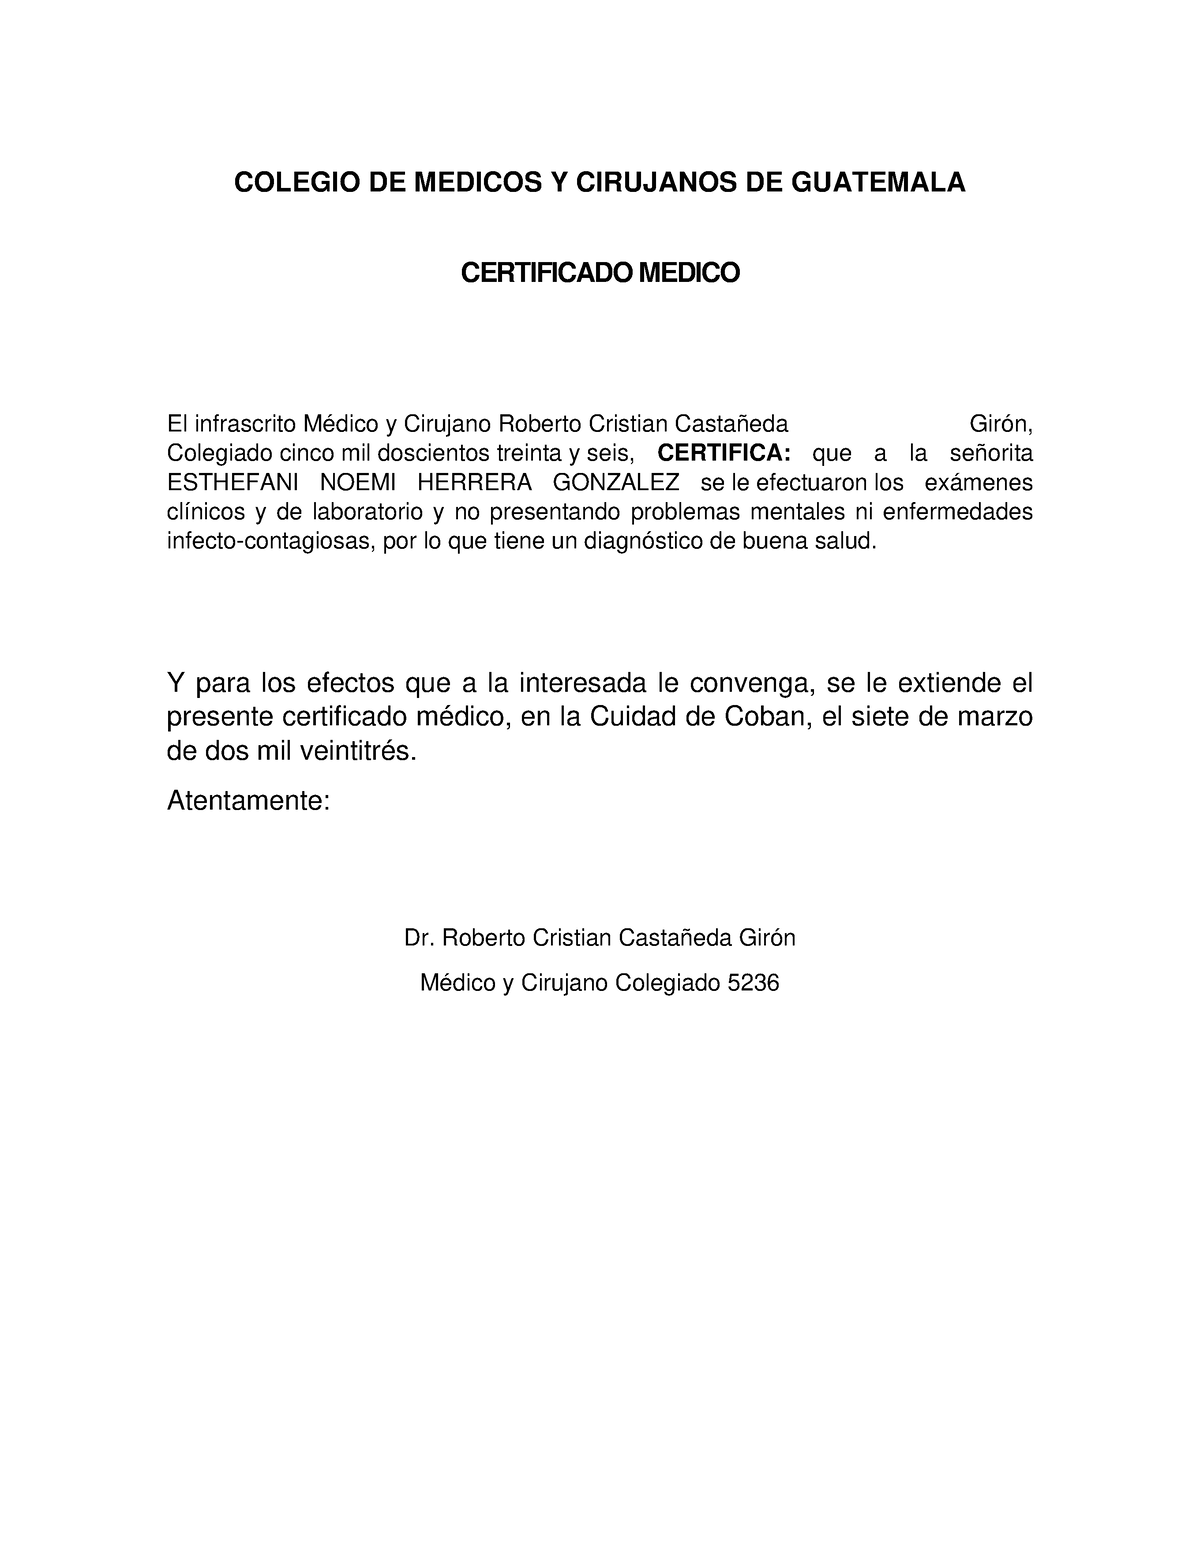 Certificado Medico Ejemplo Colegio De Medicos Y Cirujanos De Guatemala Certificado Medico El